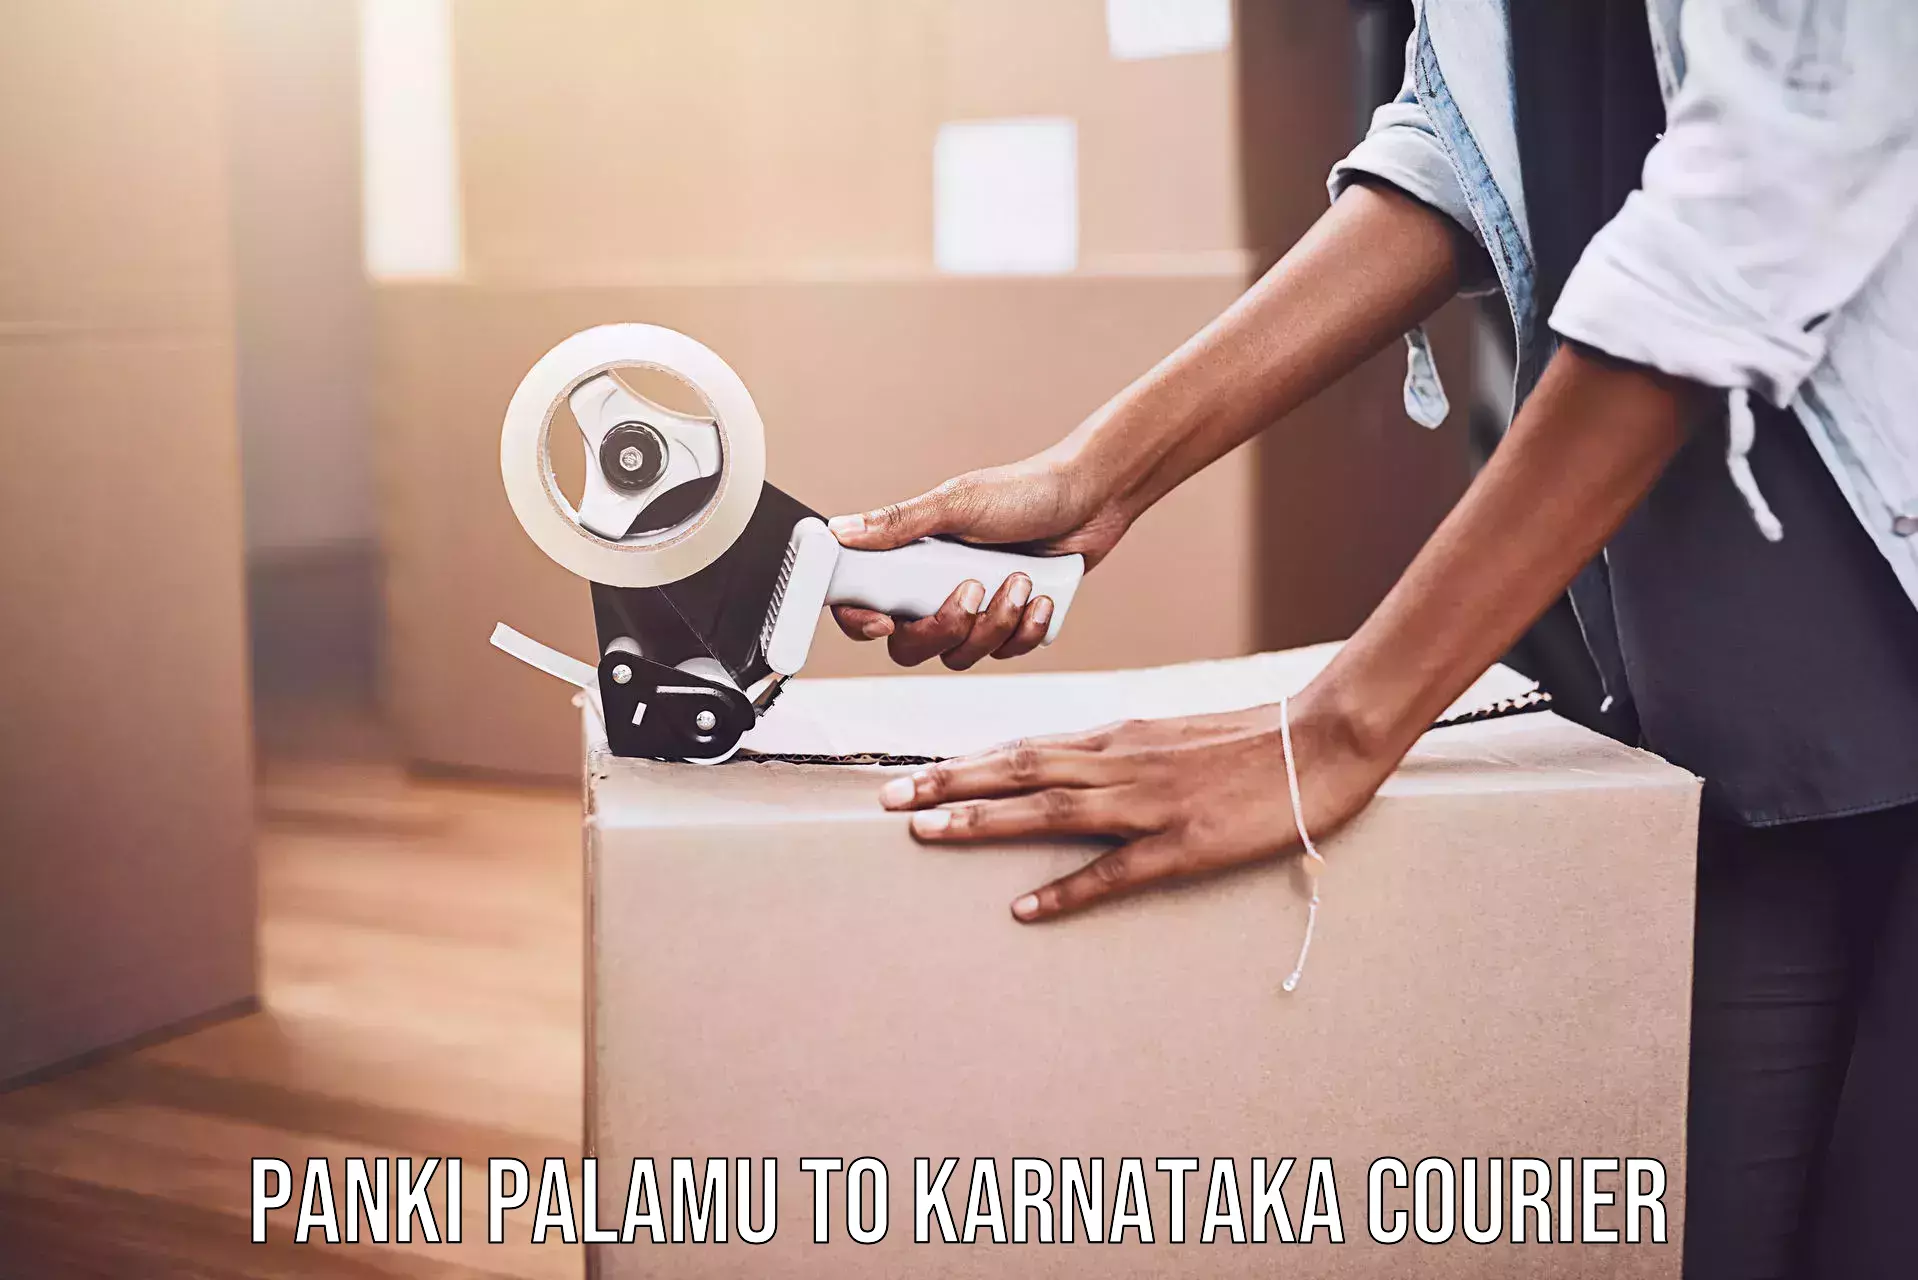 Express package handling in Panki Palamu to Karnataka